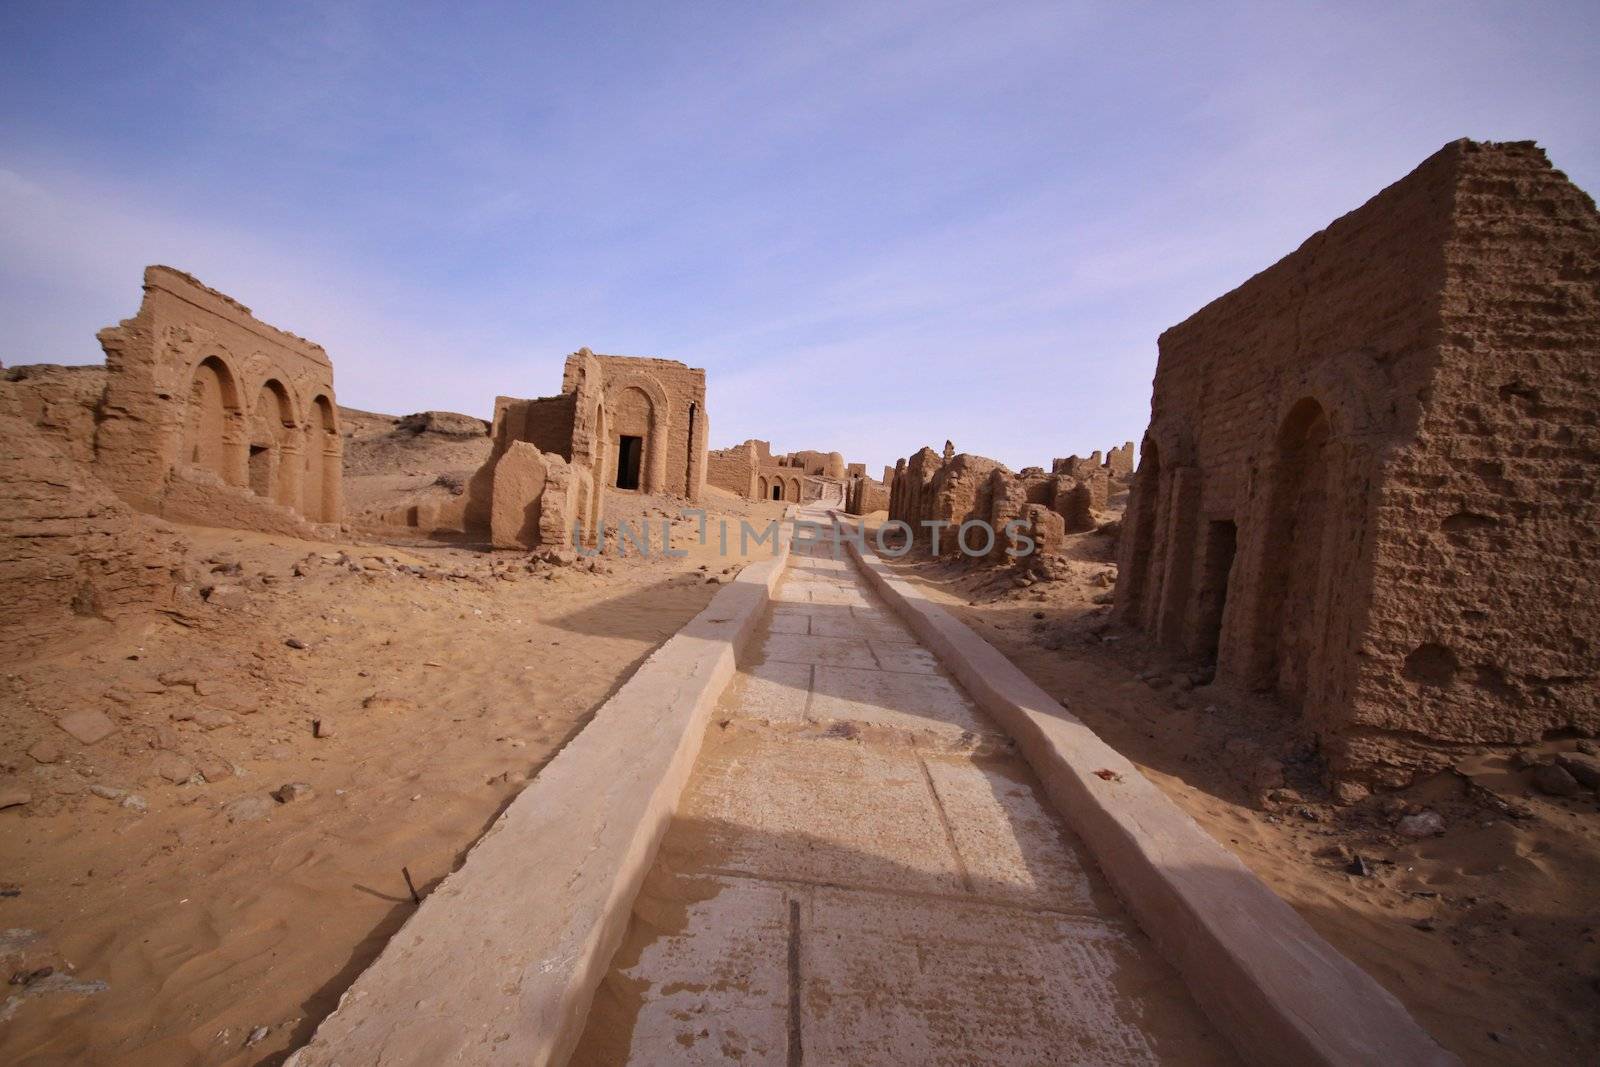 El Bagawat Cemetery, Kharga Oasis, Egypt by jnerad